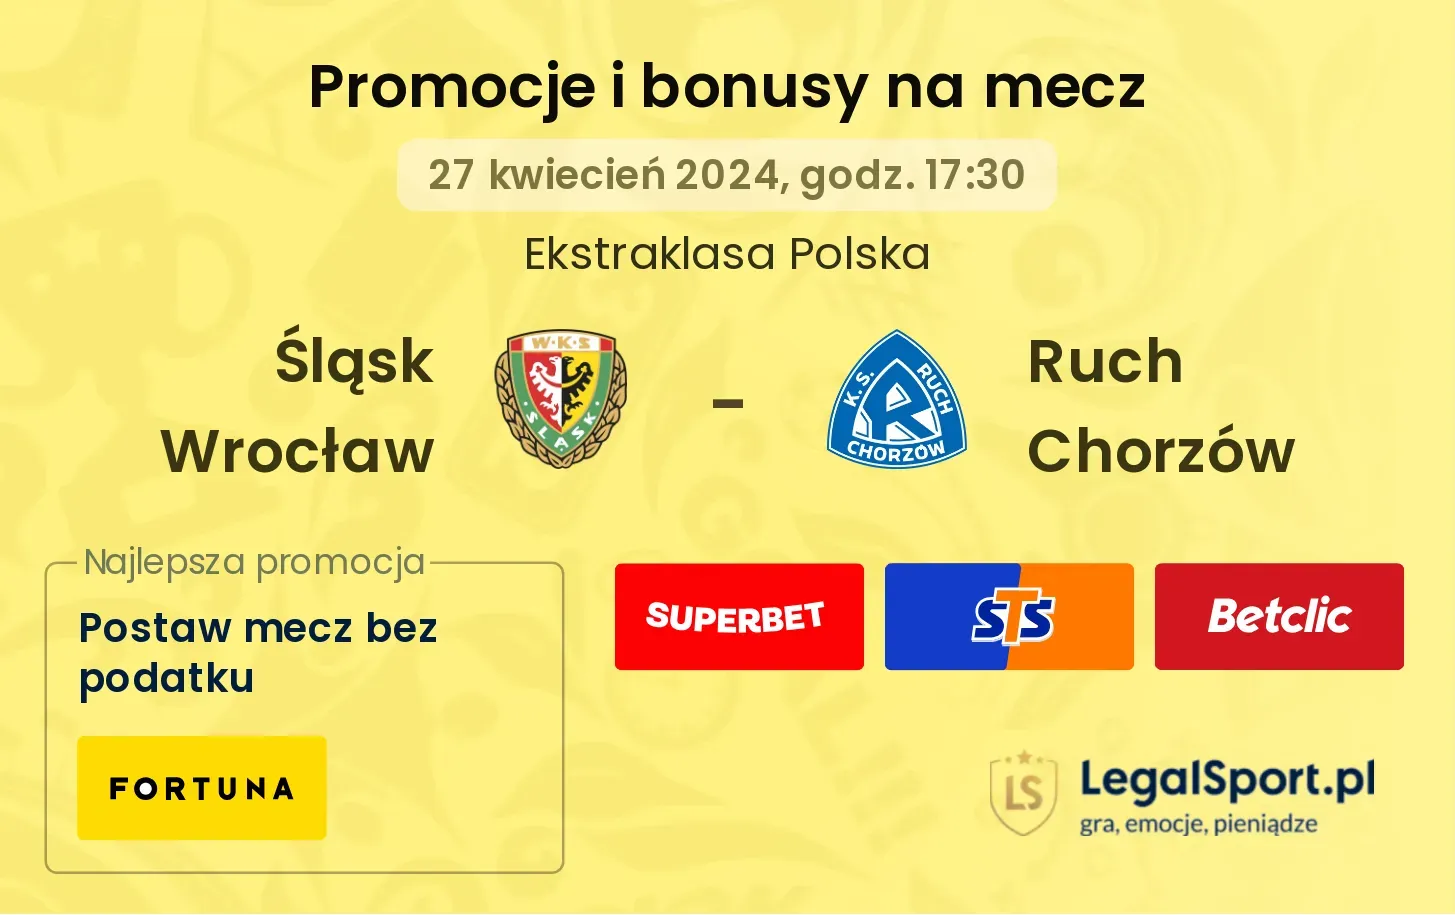 Śląsk Wrocław - Ruch Chorzów promocje bonusy na mecz